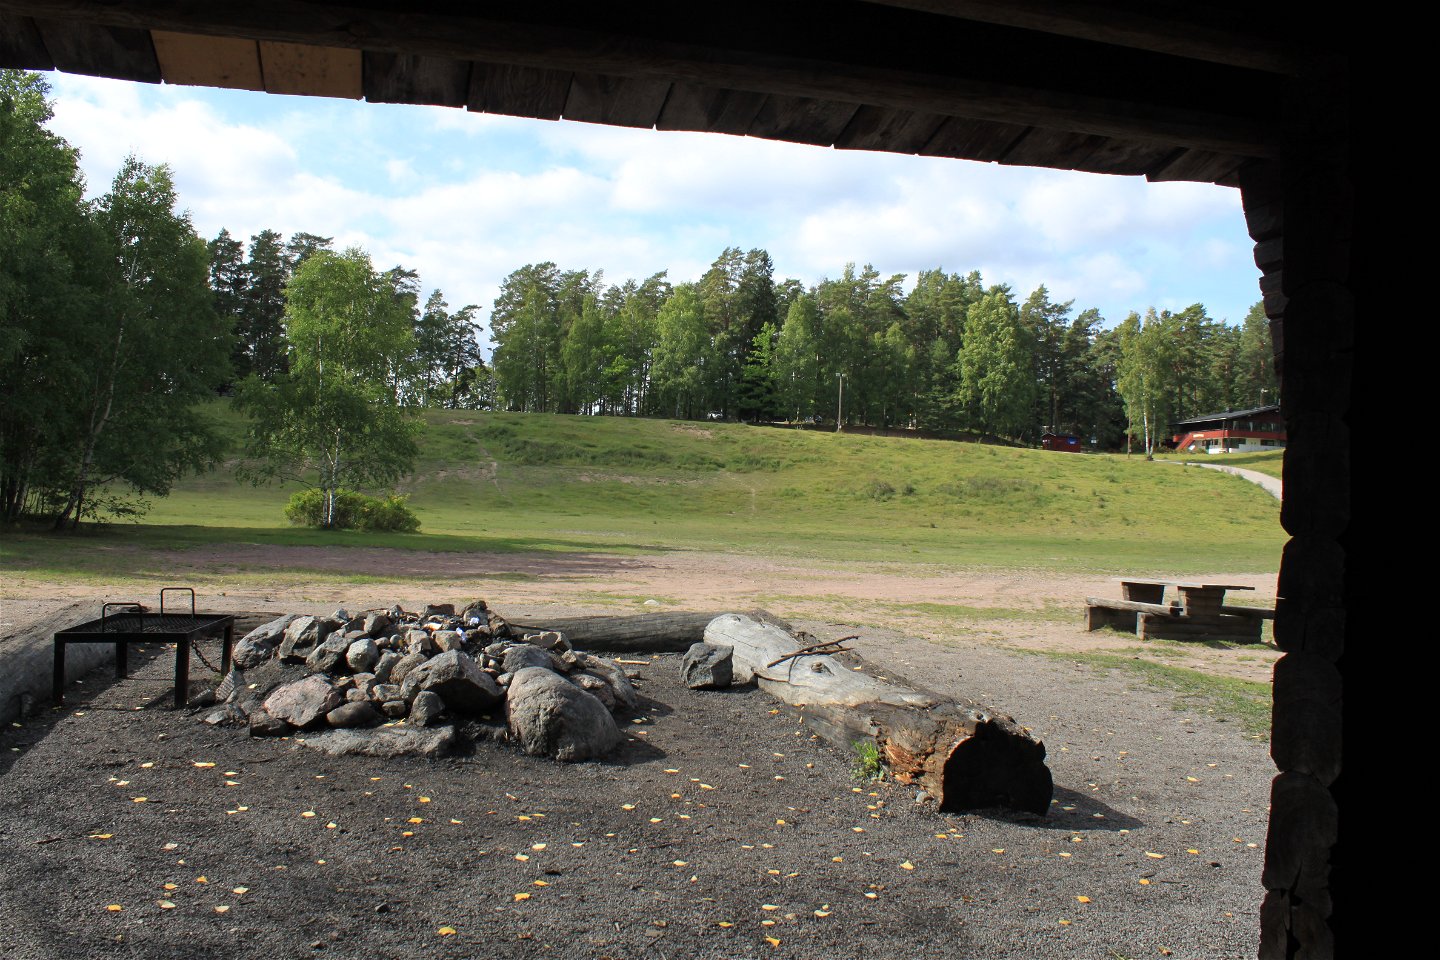 Från vindskyddets öppning kan man se grillplats med låga stockar runtom. I bakgrunden syns Sunnerstaåsen och många träd.